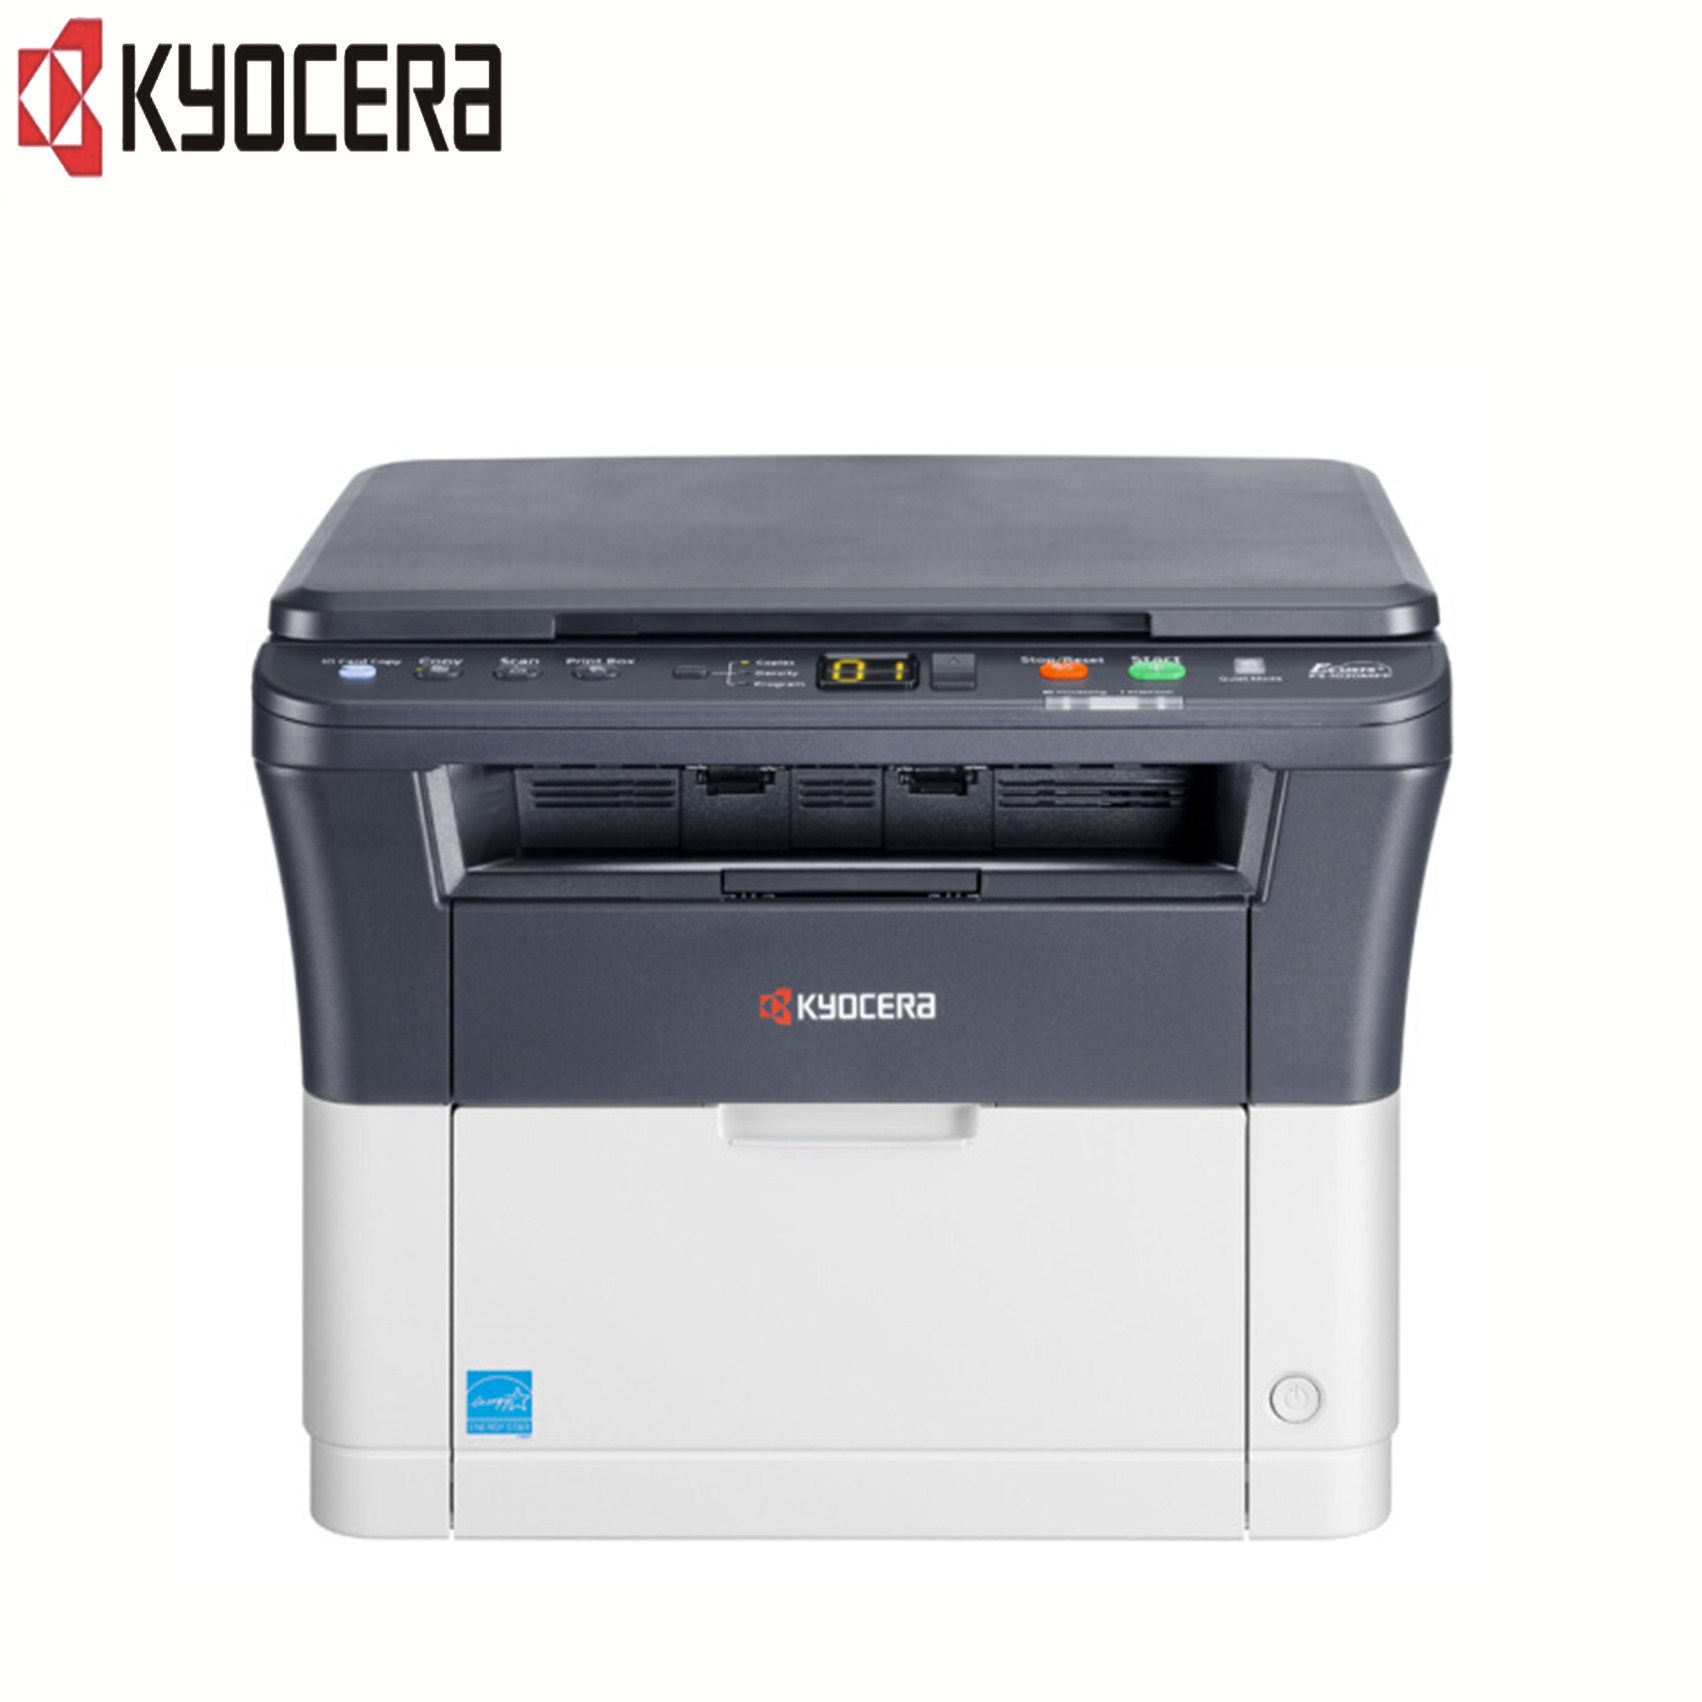 京瓷(KYOCERA)FS-1020MFP黑白激光多功能打印机 打印/复印/扫描一体机